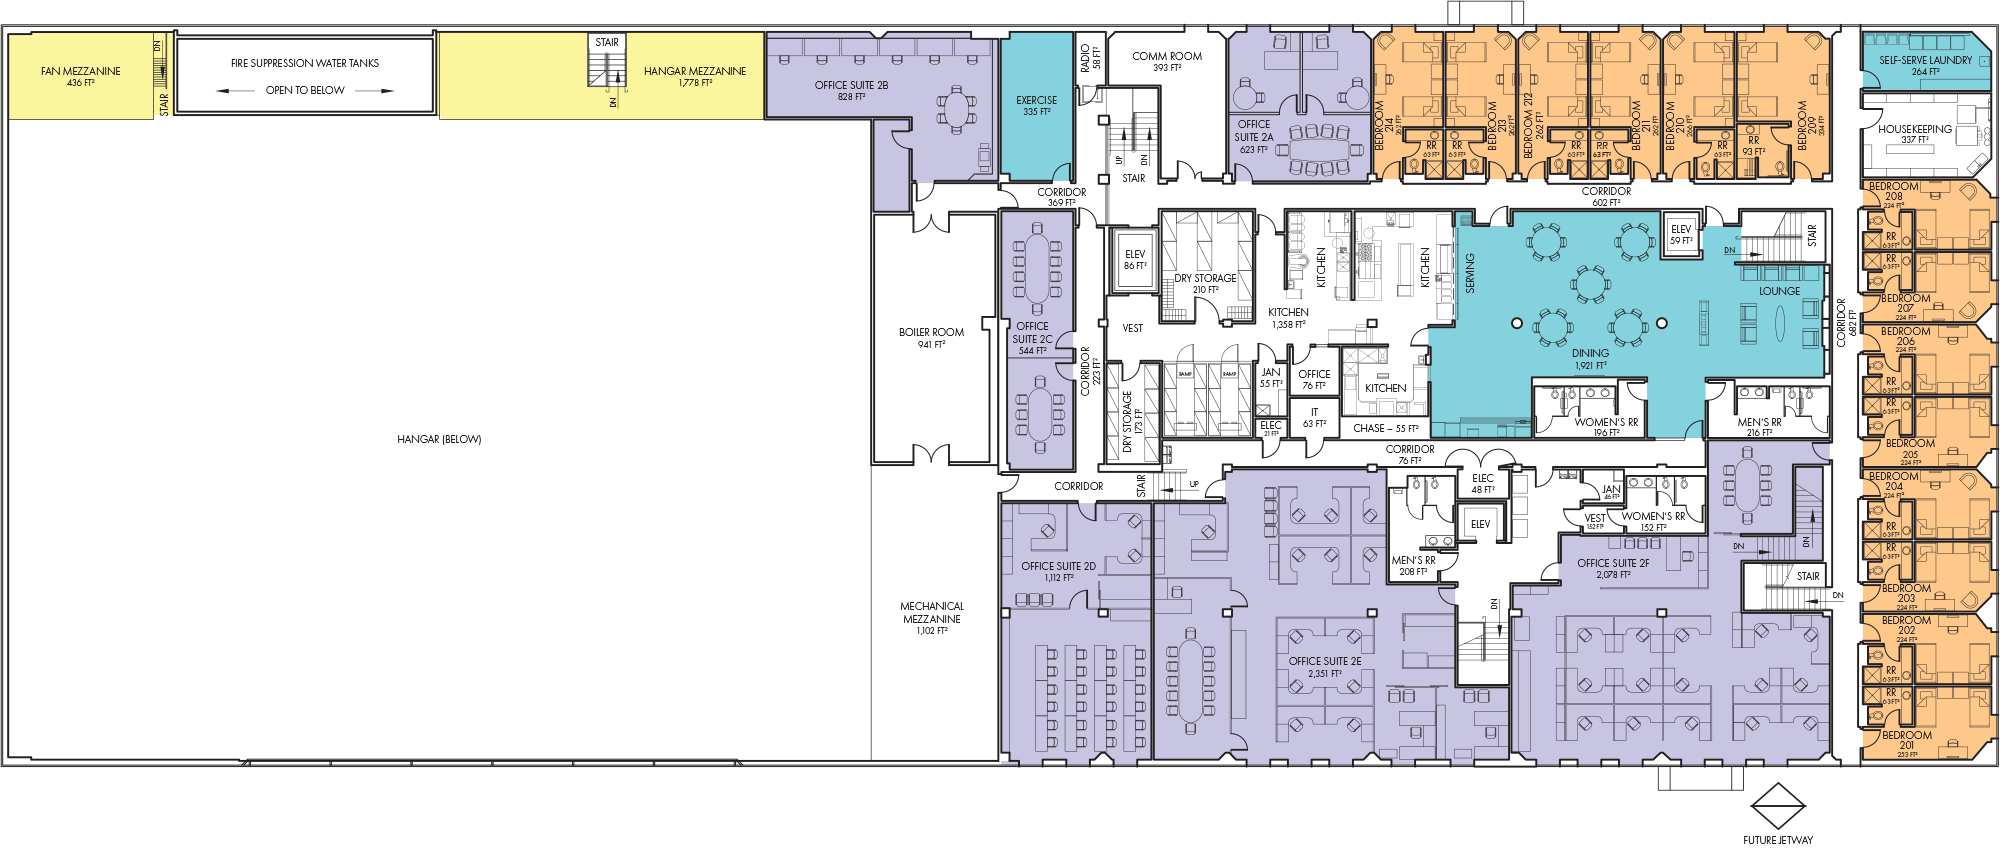 Deadhorse Aviation Center floor plans, level 2